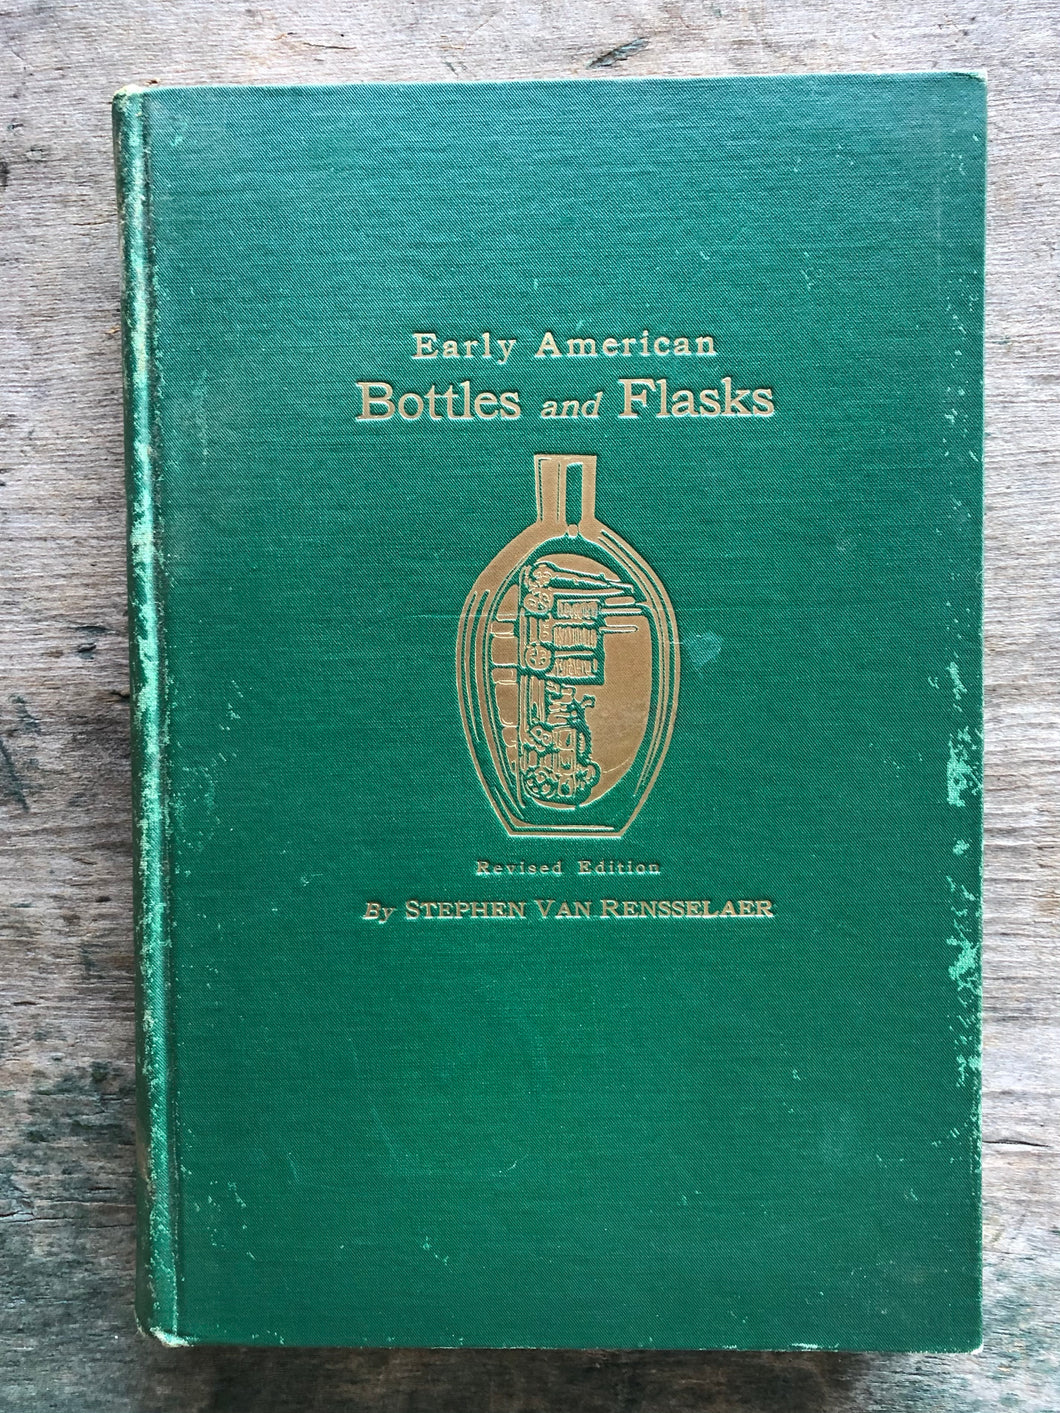 Early American Bottles and Flasks by Stephen Van Rensselaer